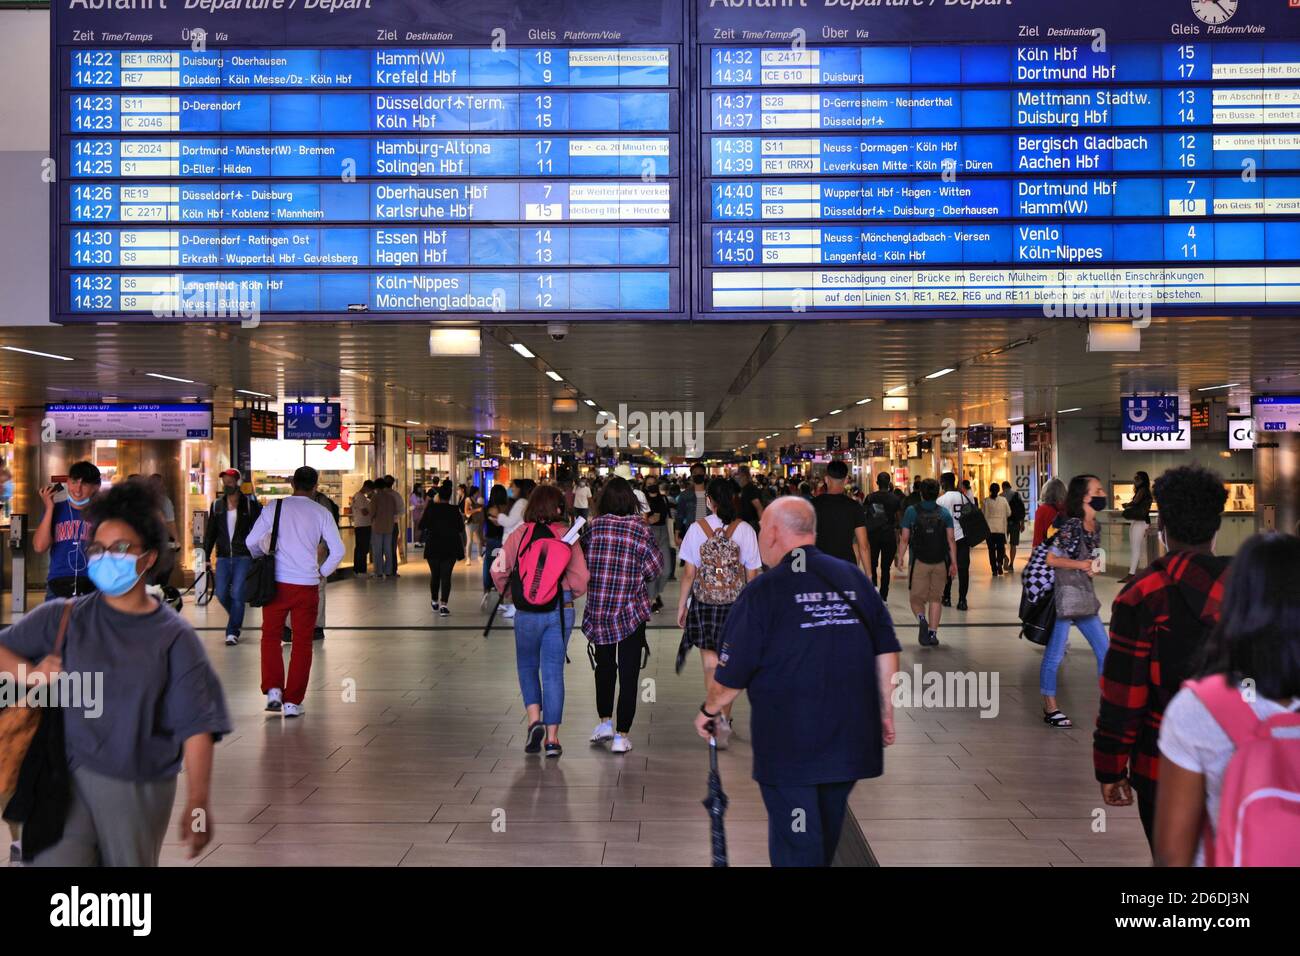 DÜSSELDORF, DEUTSCHLAND - 19. SEPTEMBER 2020: Besucher besuchen den Düsseldorfer Hauptbahnhof in Deutschland. Düsseldorf ist die 7. Größte Stadt i Stockfoto